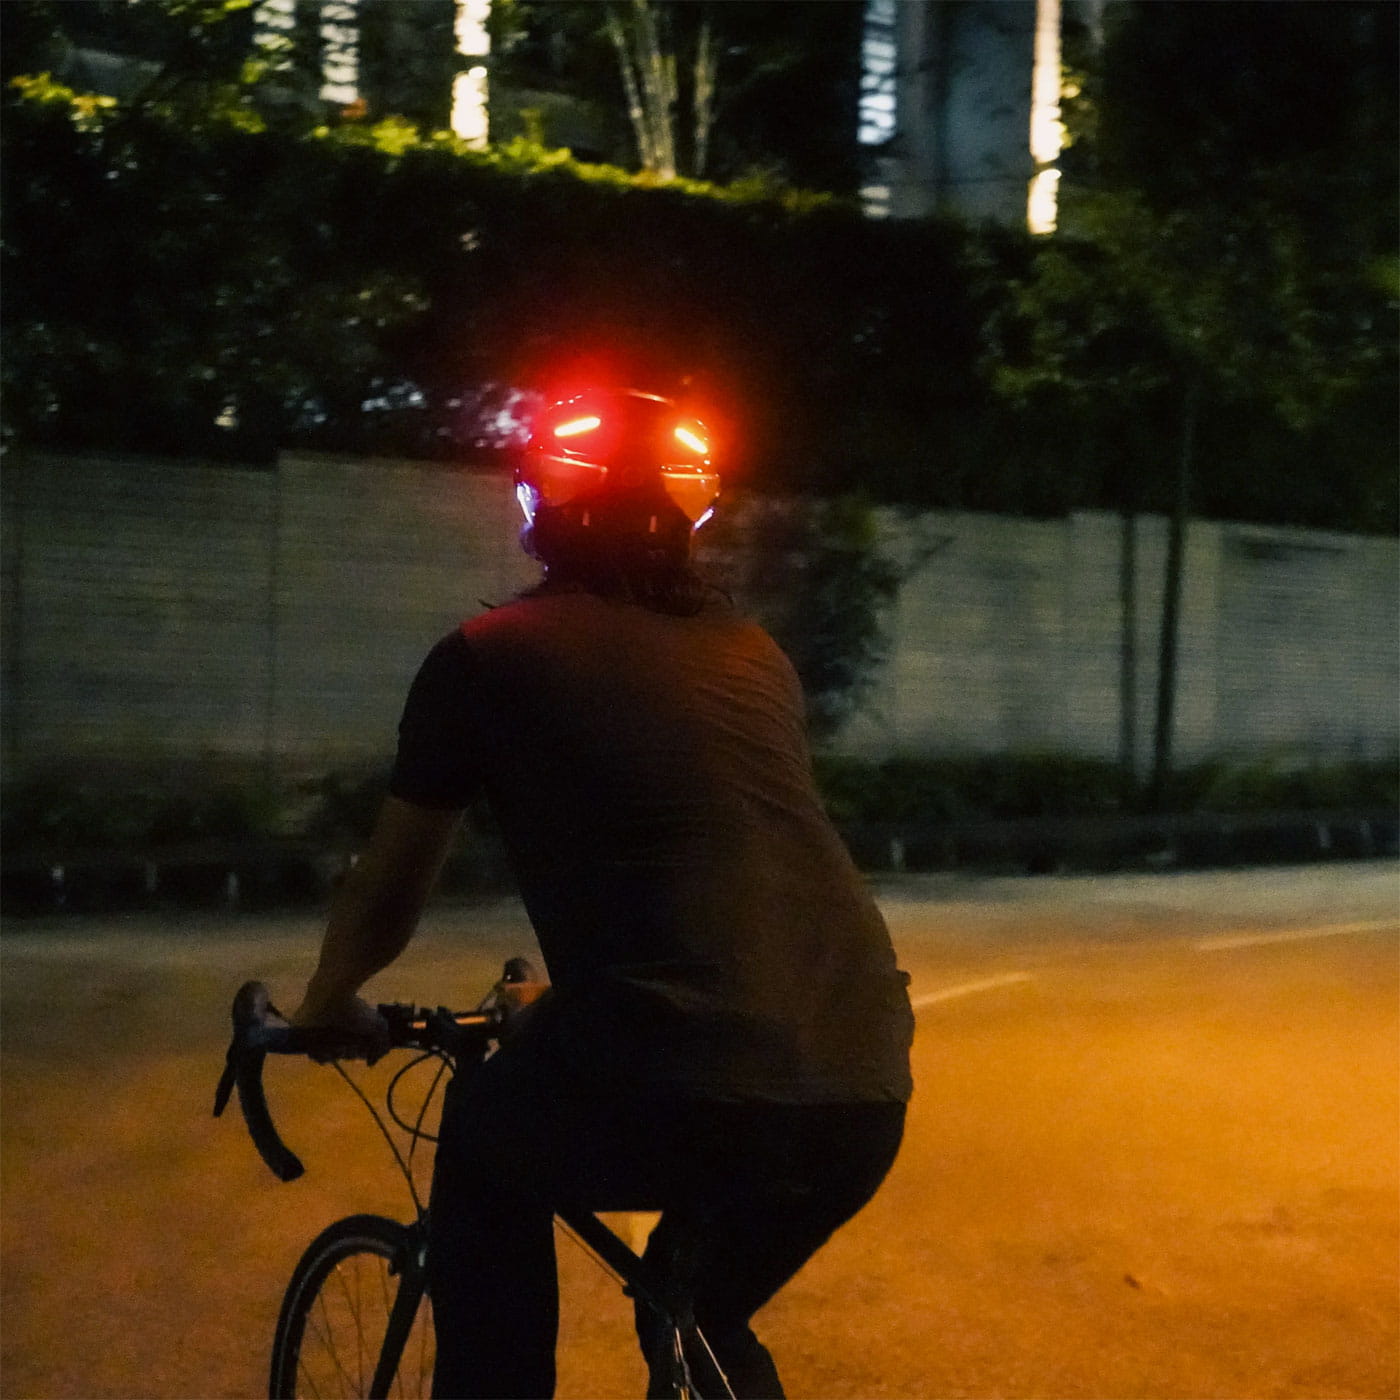 Lumos Ultra E-Bike Helm mit Blinkern und Visier